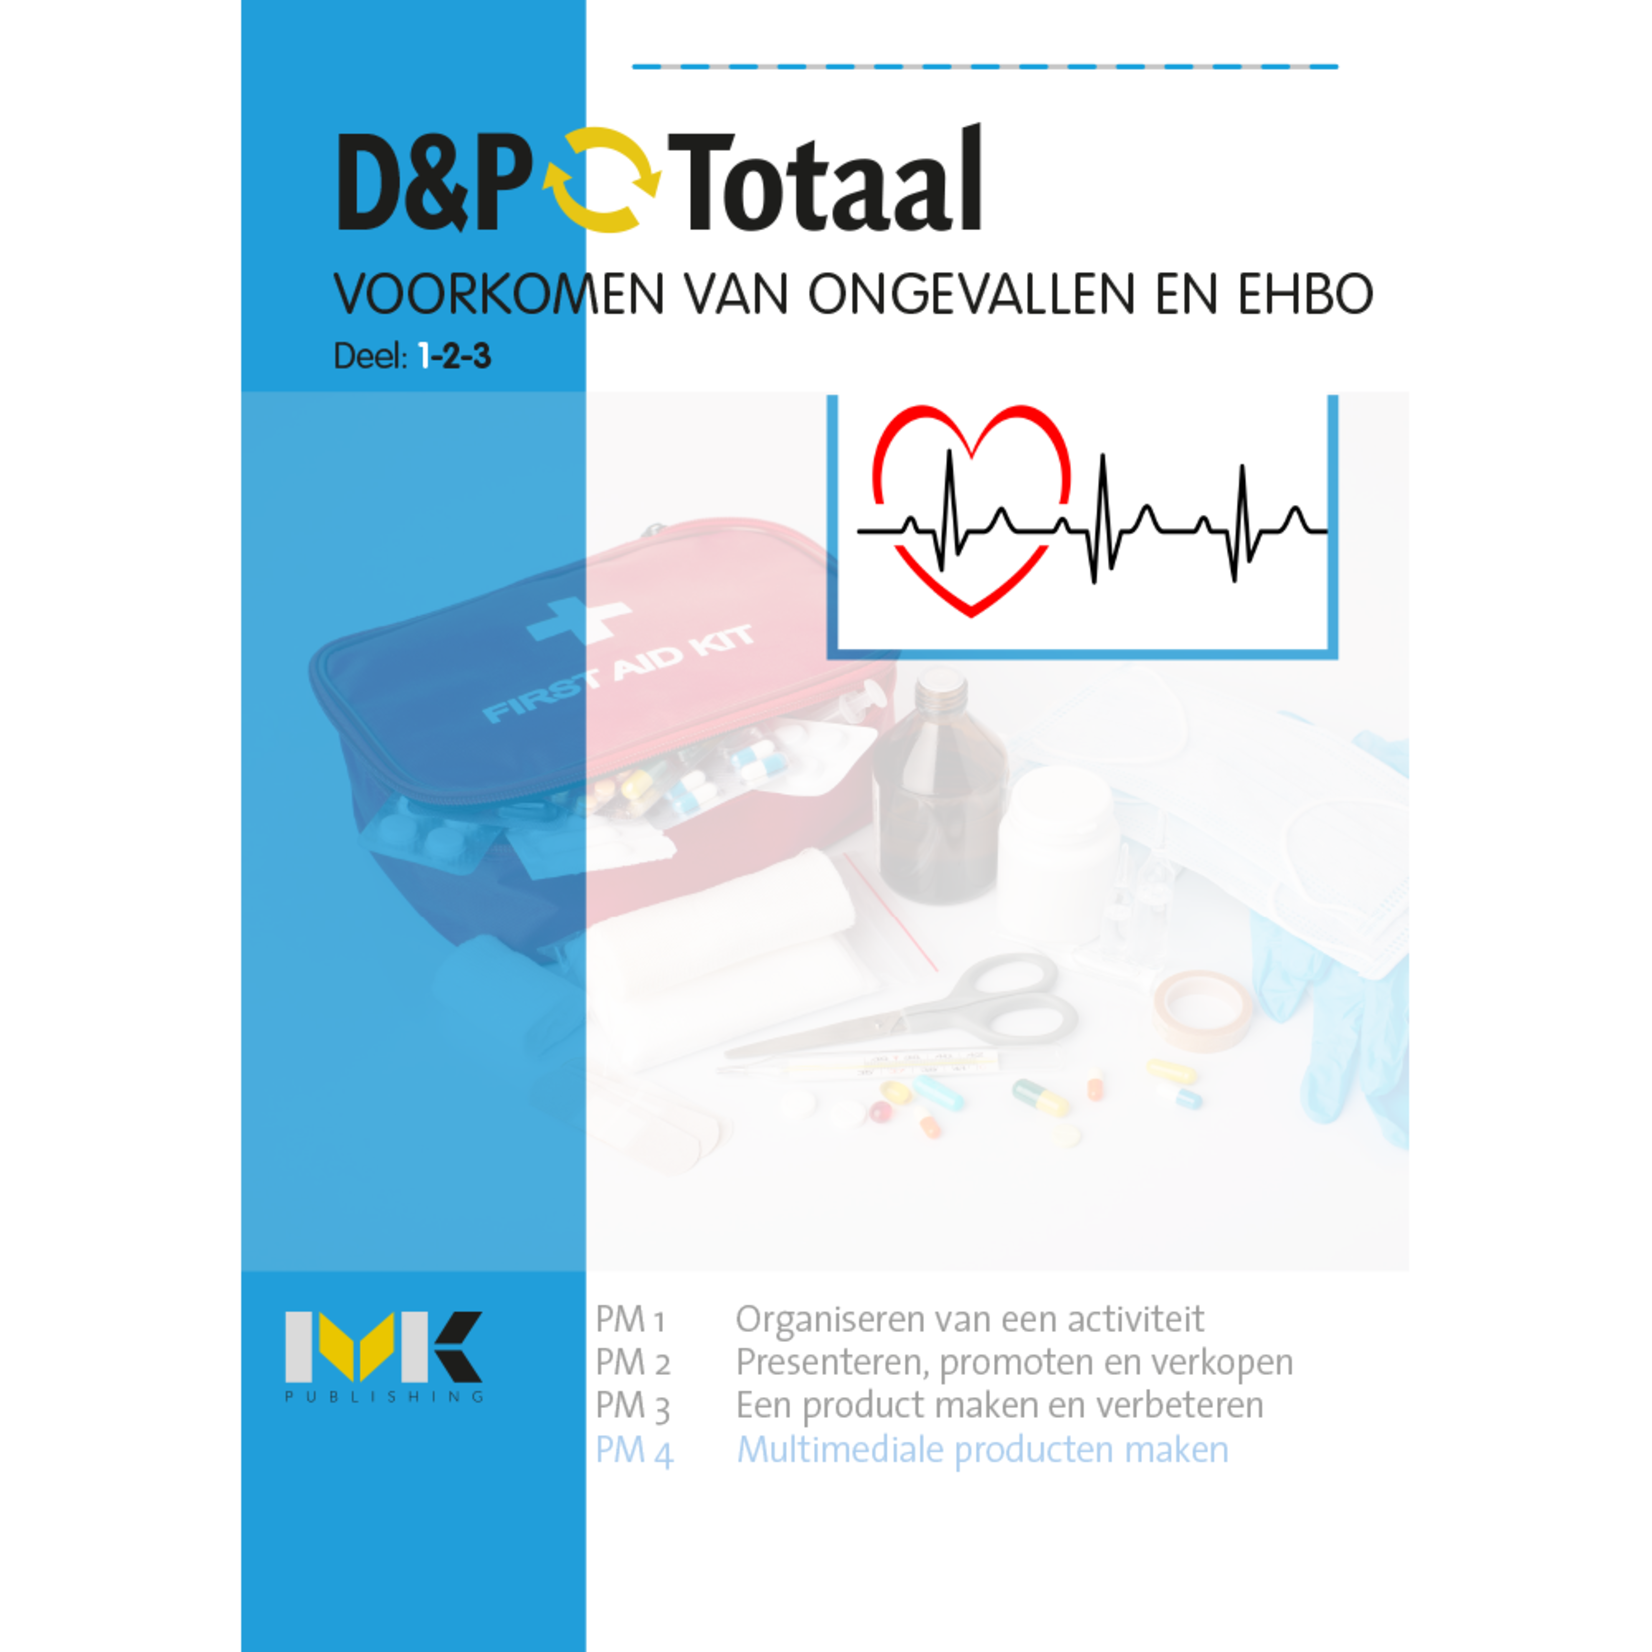 D&P-Totaal - Z&W Voorkomen van ongevallen en EHBO (PM4/1617)